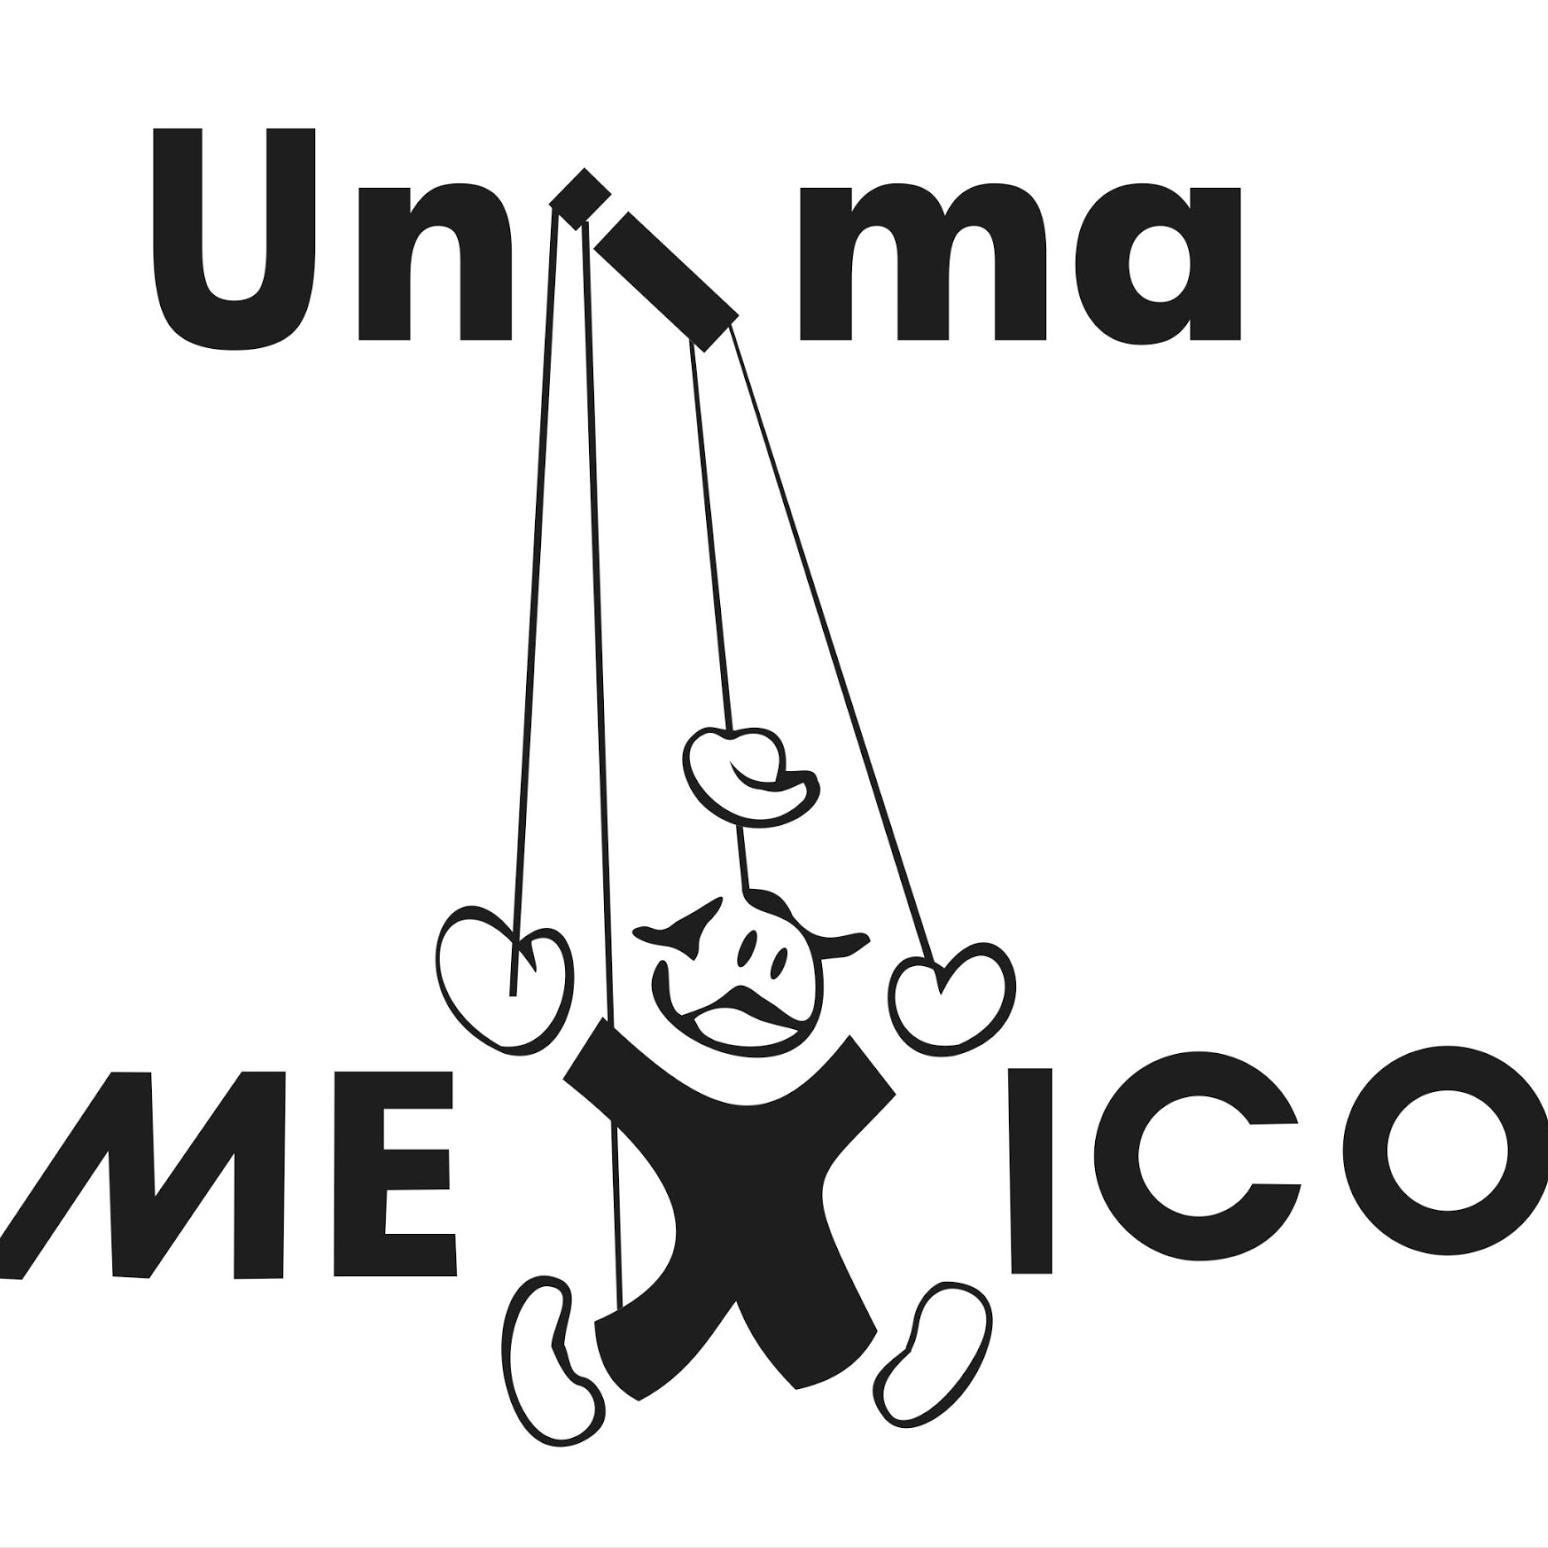 UNIMA México